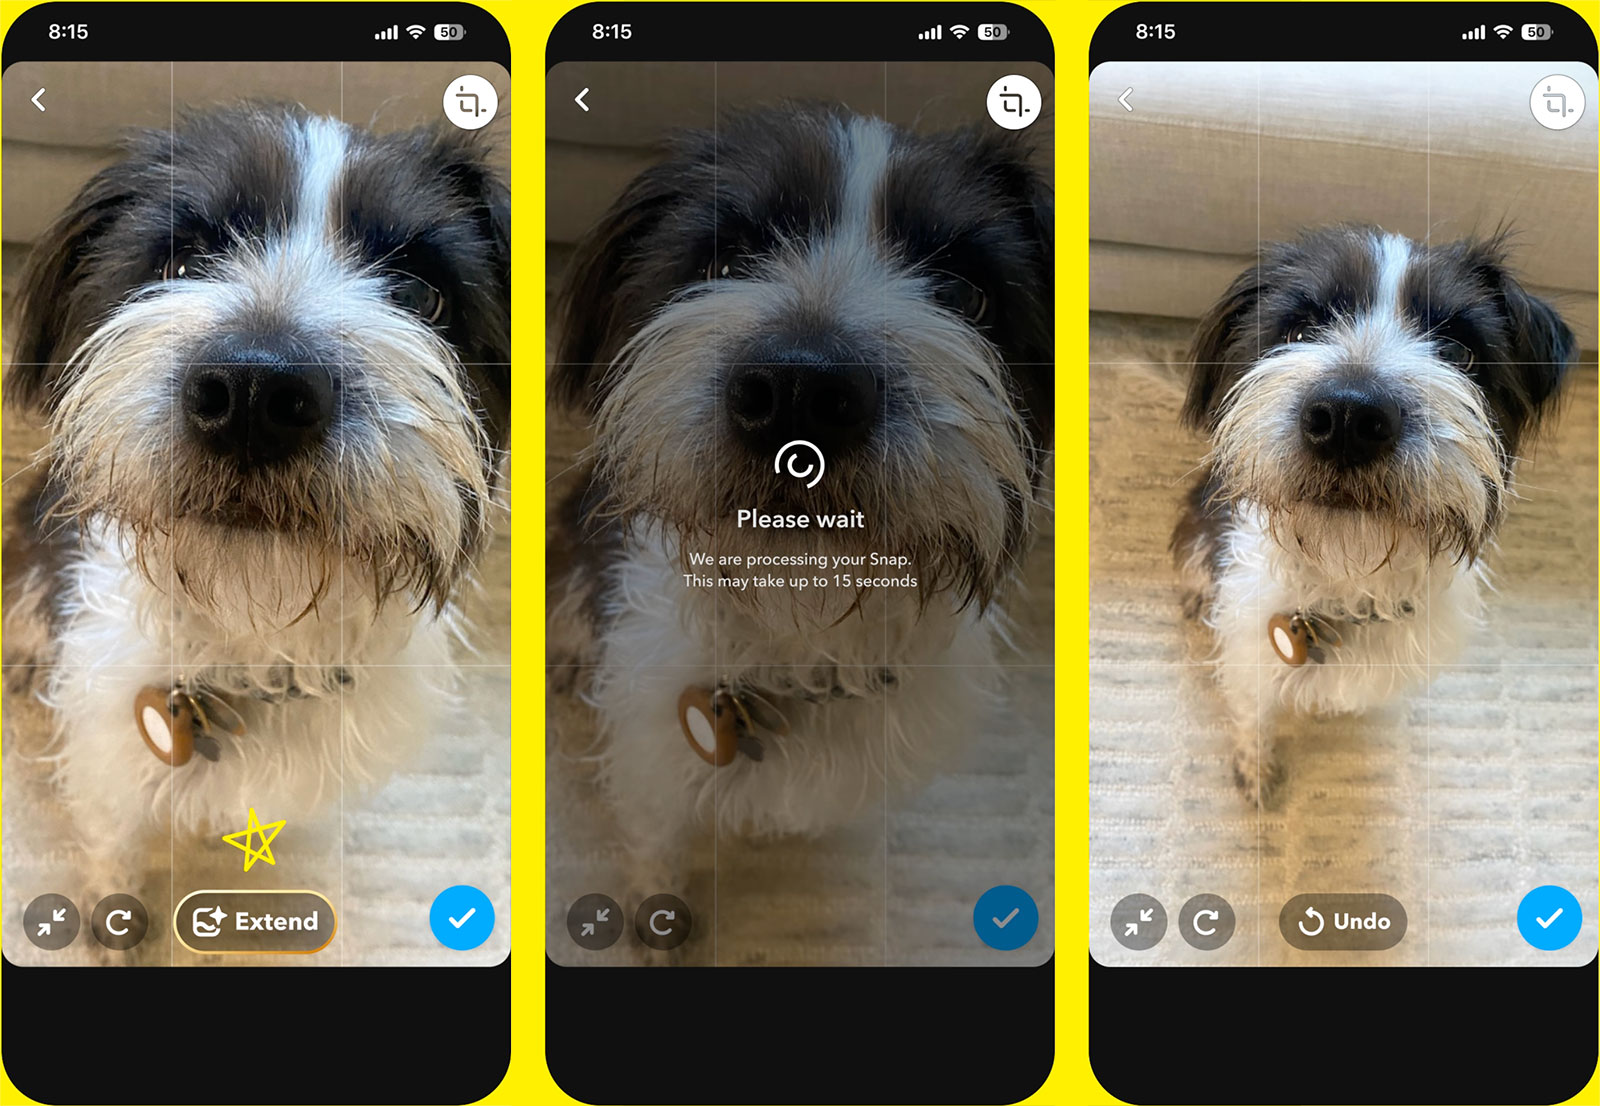 Subskrybenci Snapchat+ mogą teraz używać sztucznej inteligencji do tworzenia lub rozszerzania obrazów w aplikacji.